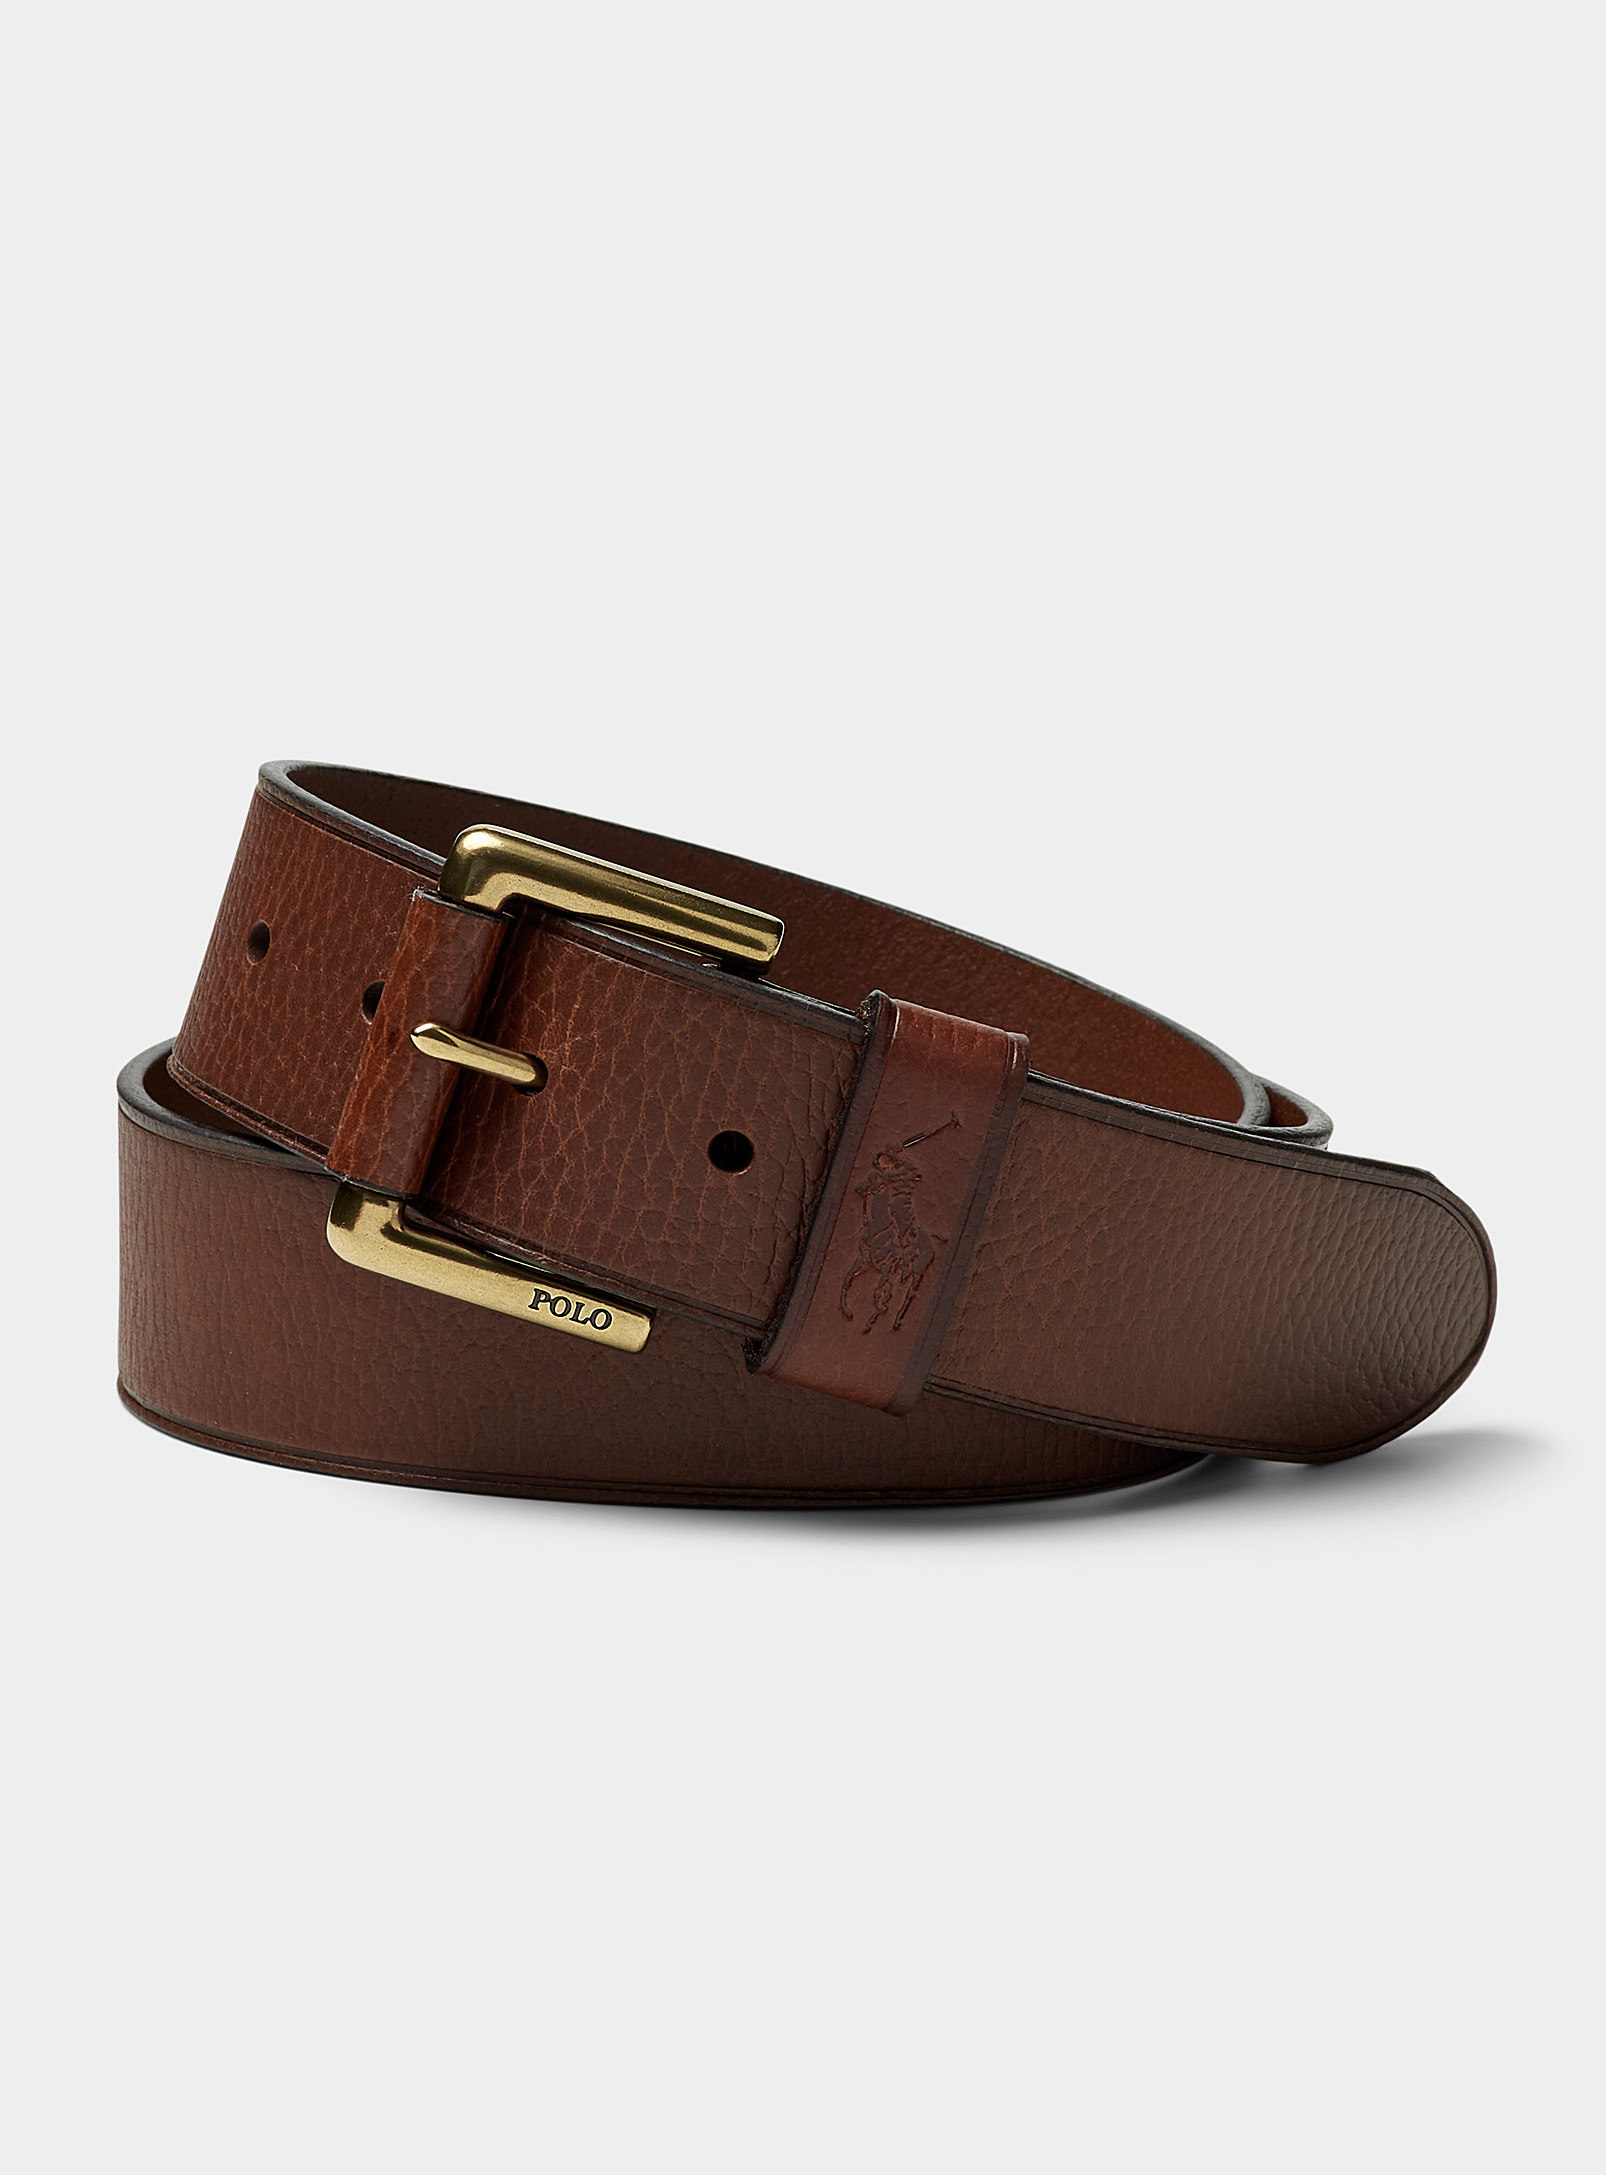 Polo Ralph Lauren - Men's Textured leather belt